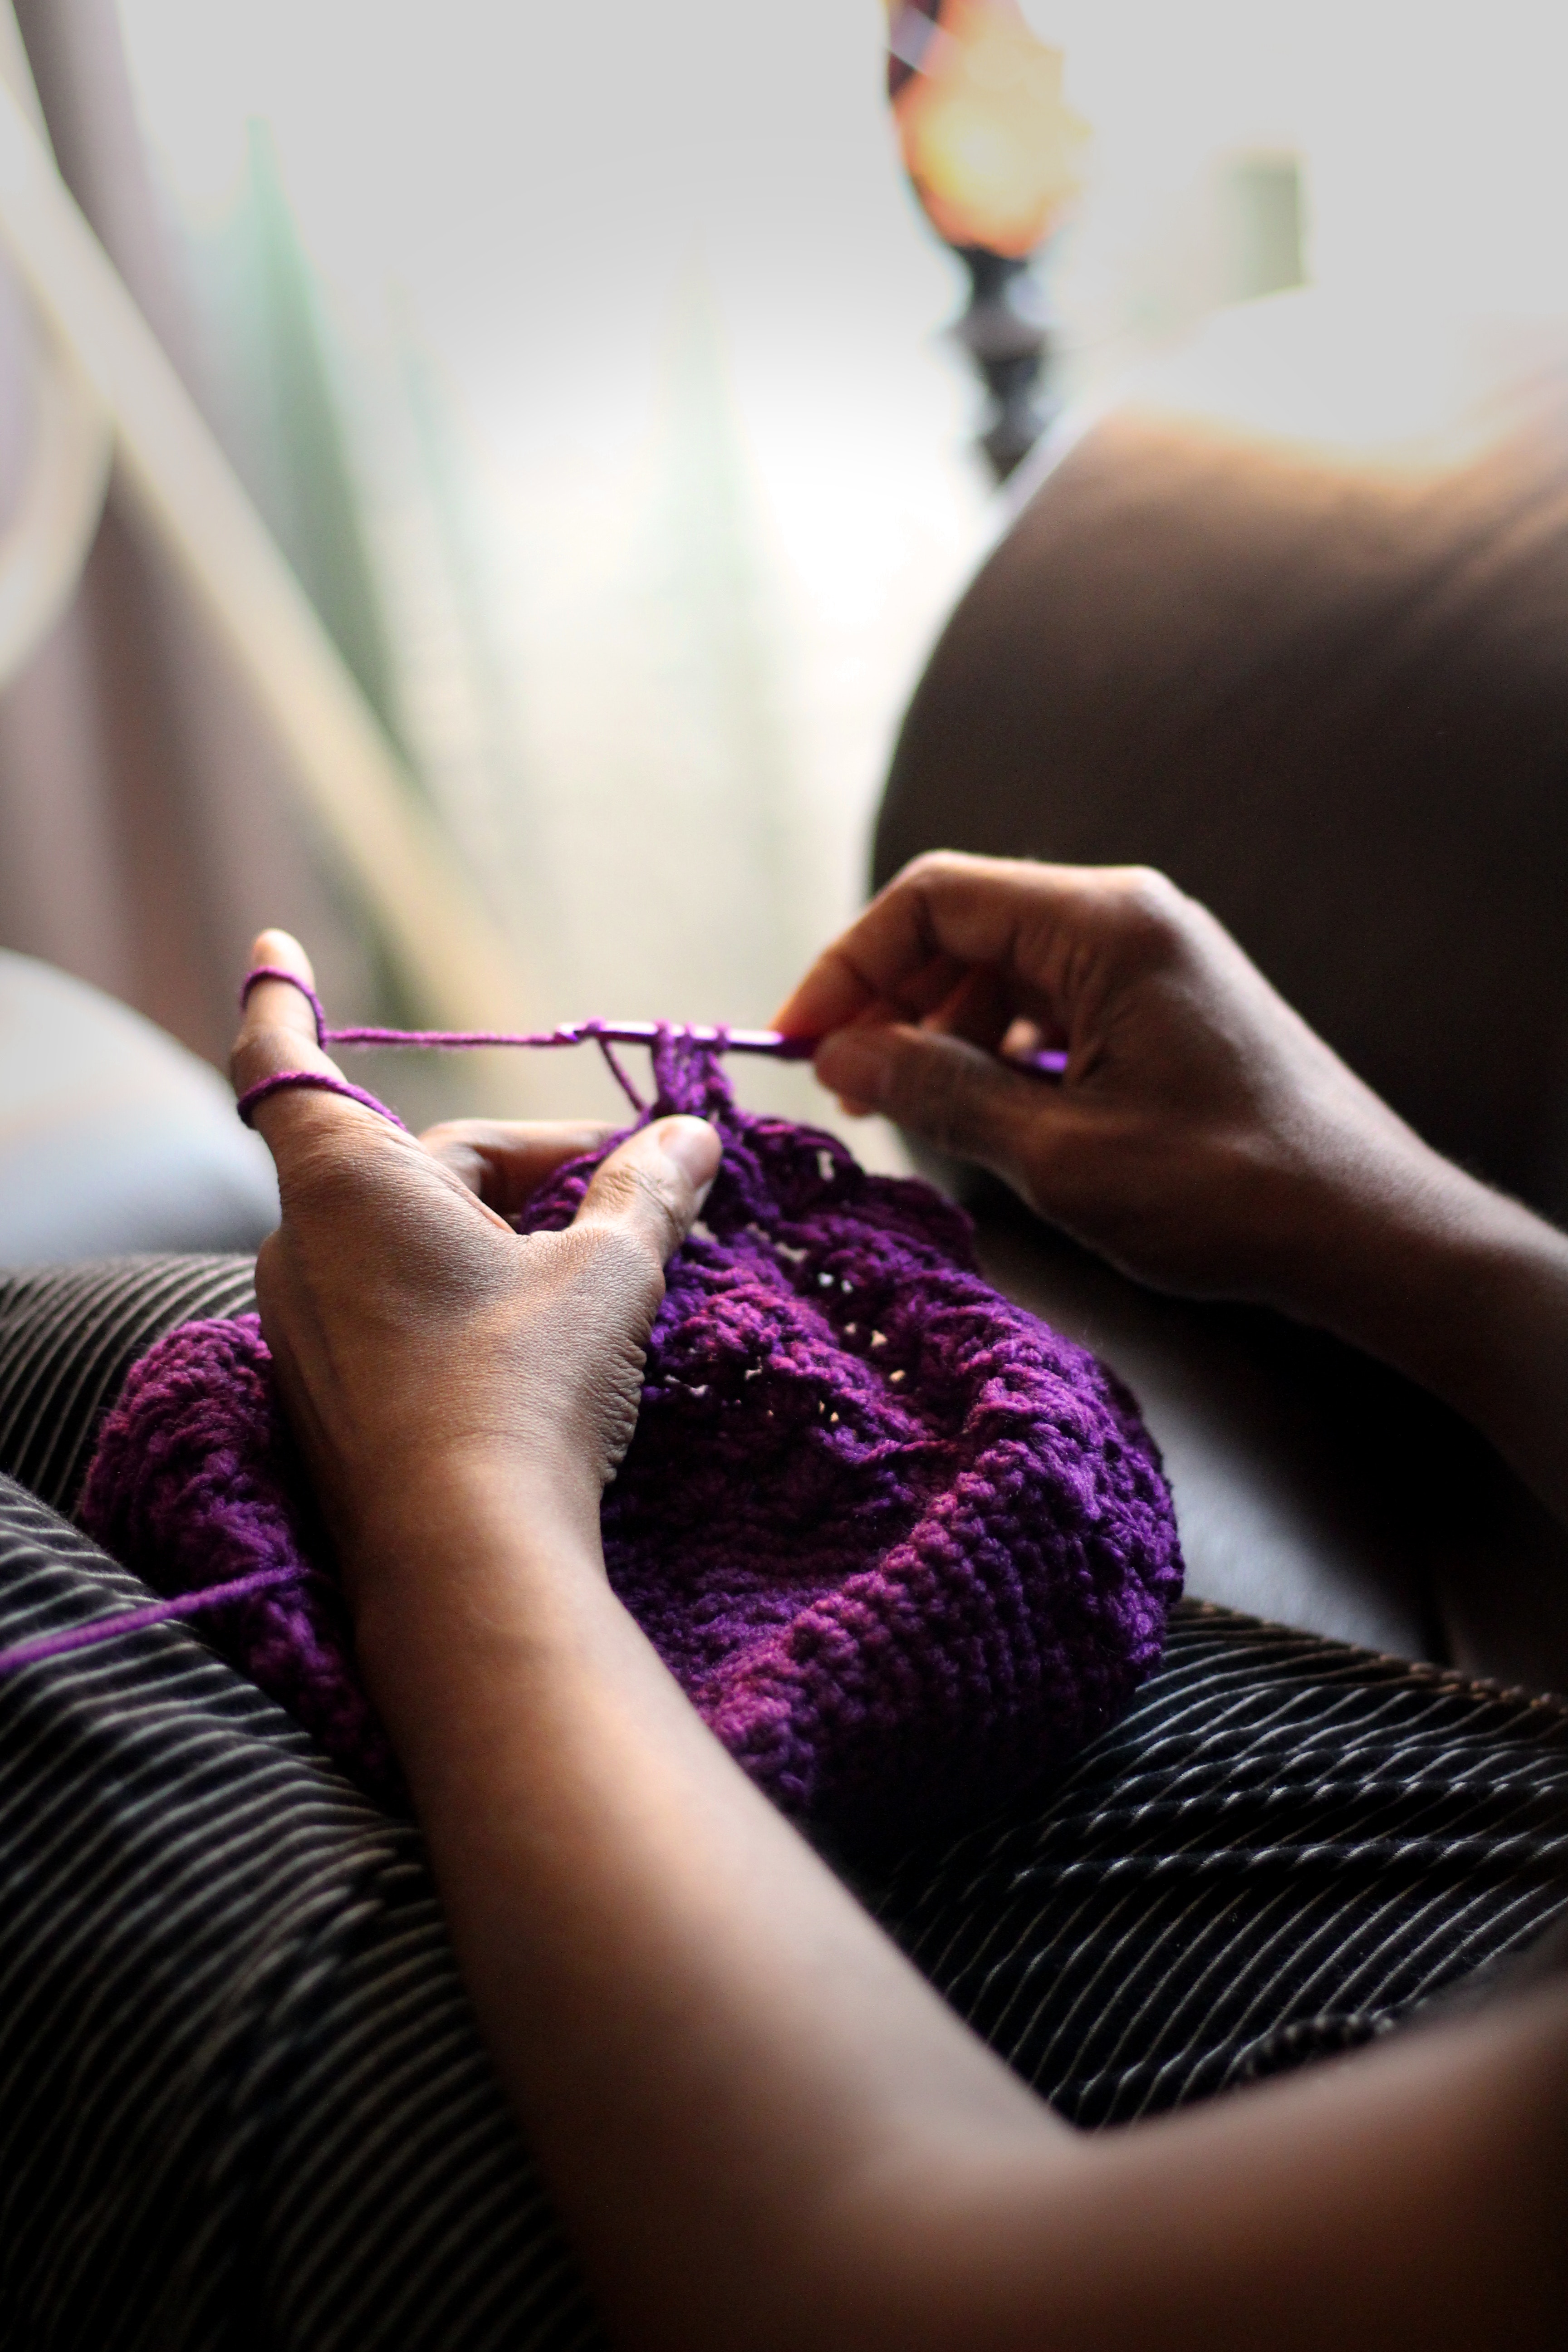 crochet avoid wrist pain